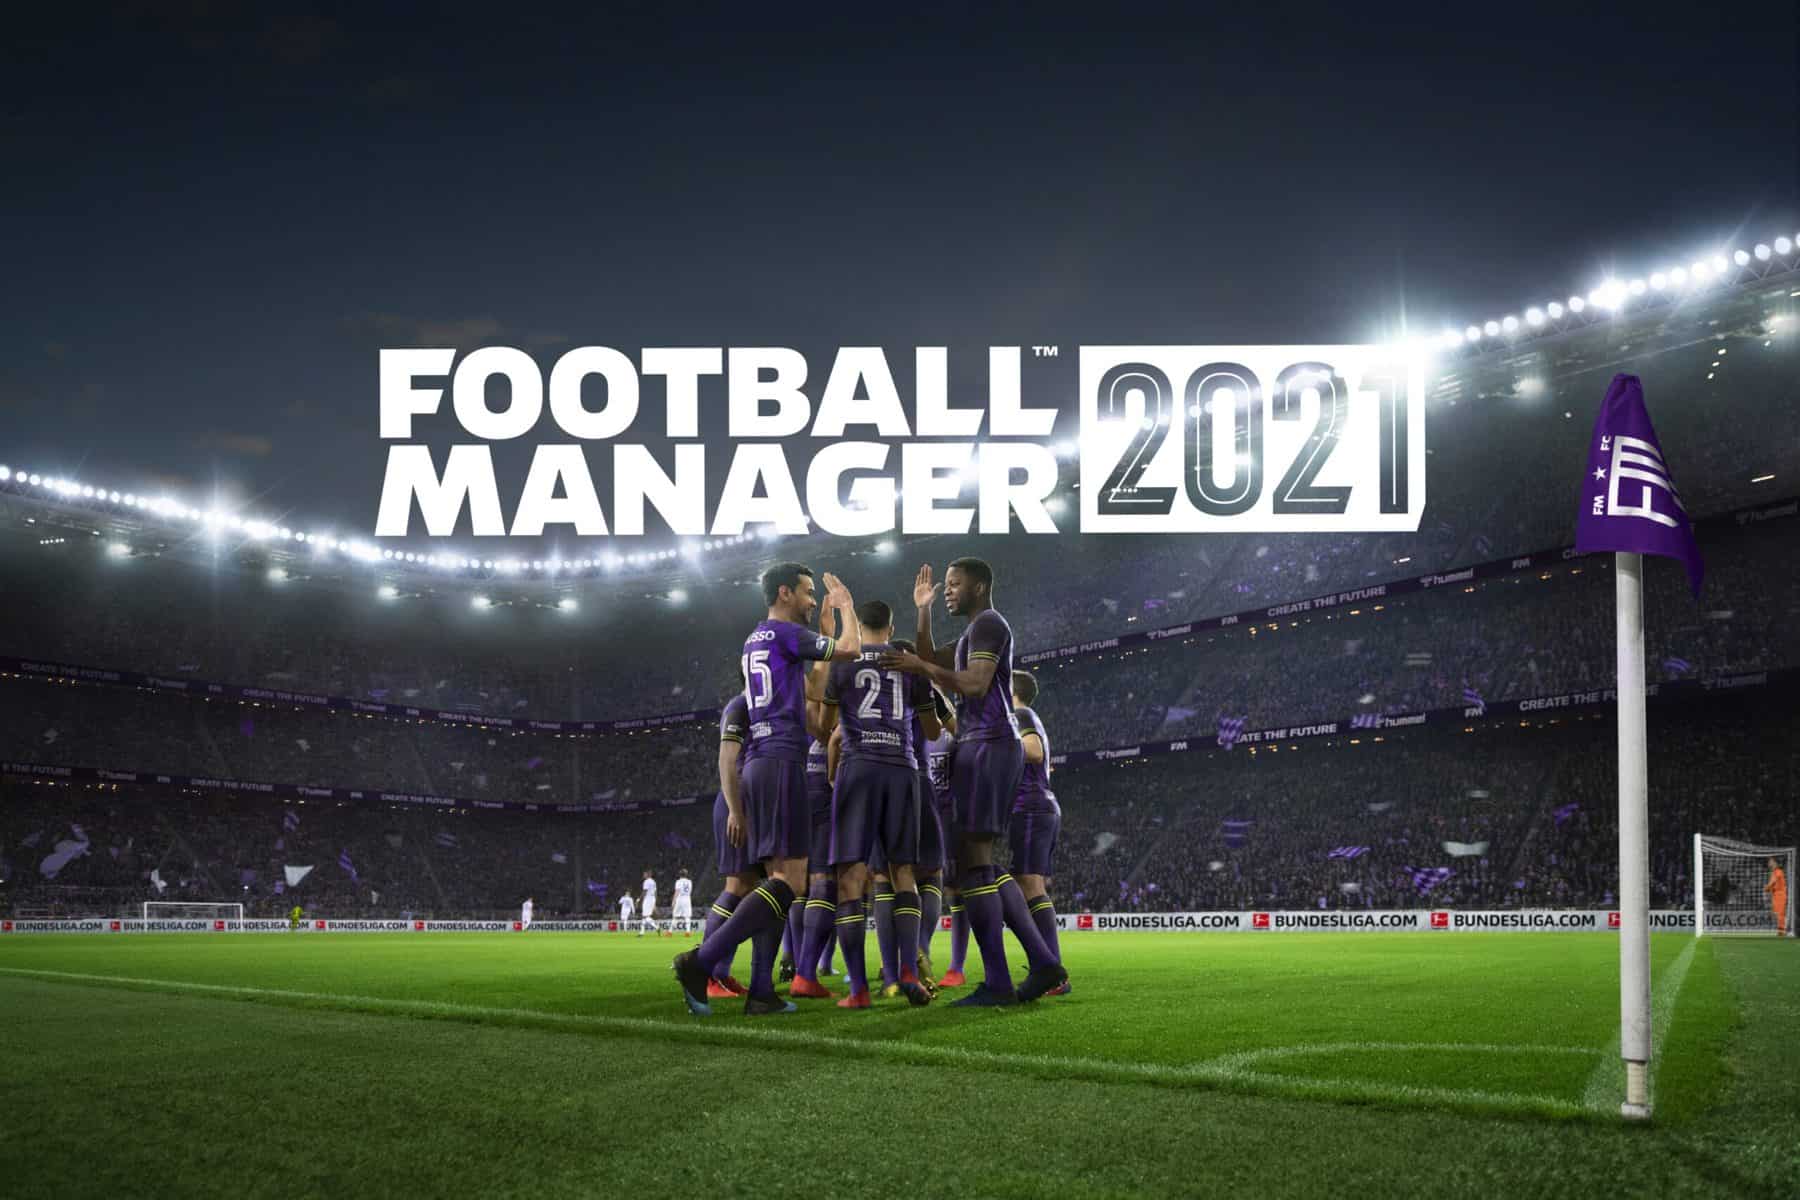 Football Manager 21 är ännu mer realistiskt!  Ansioso?